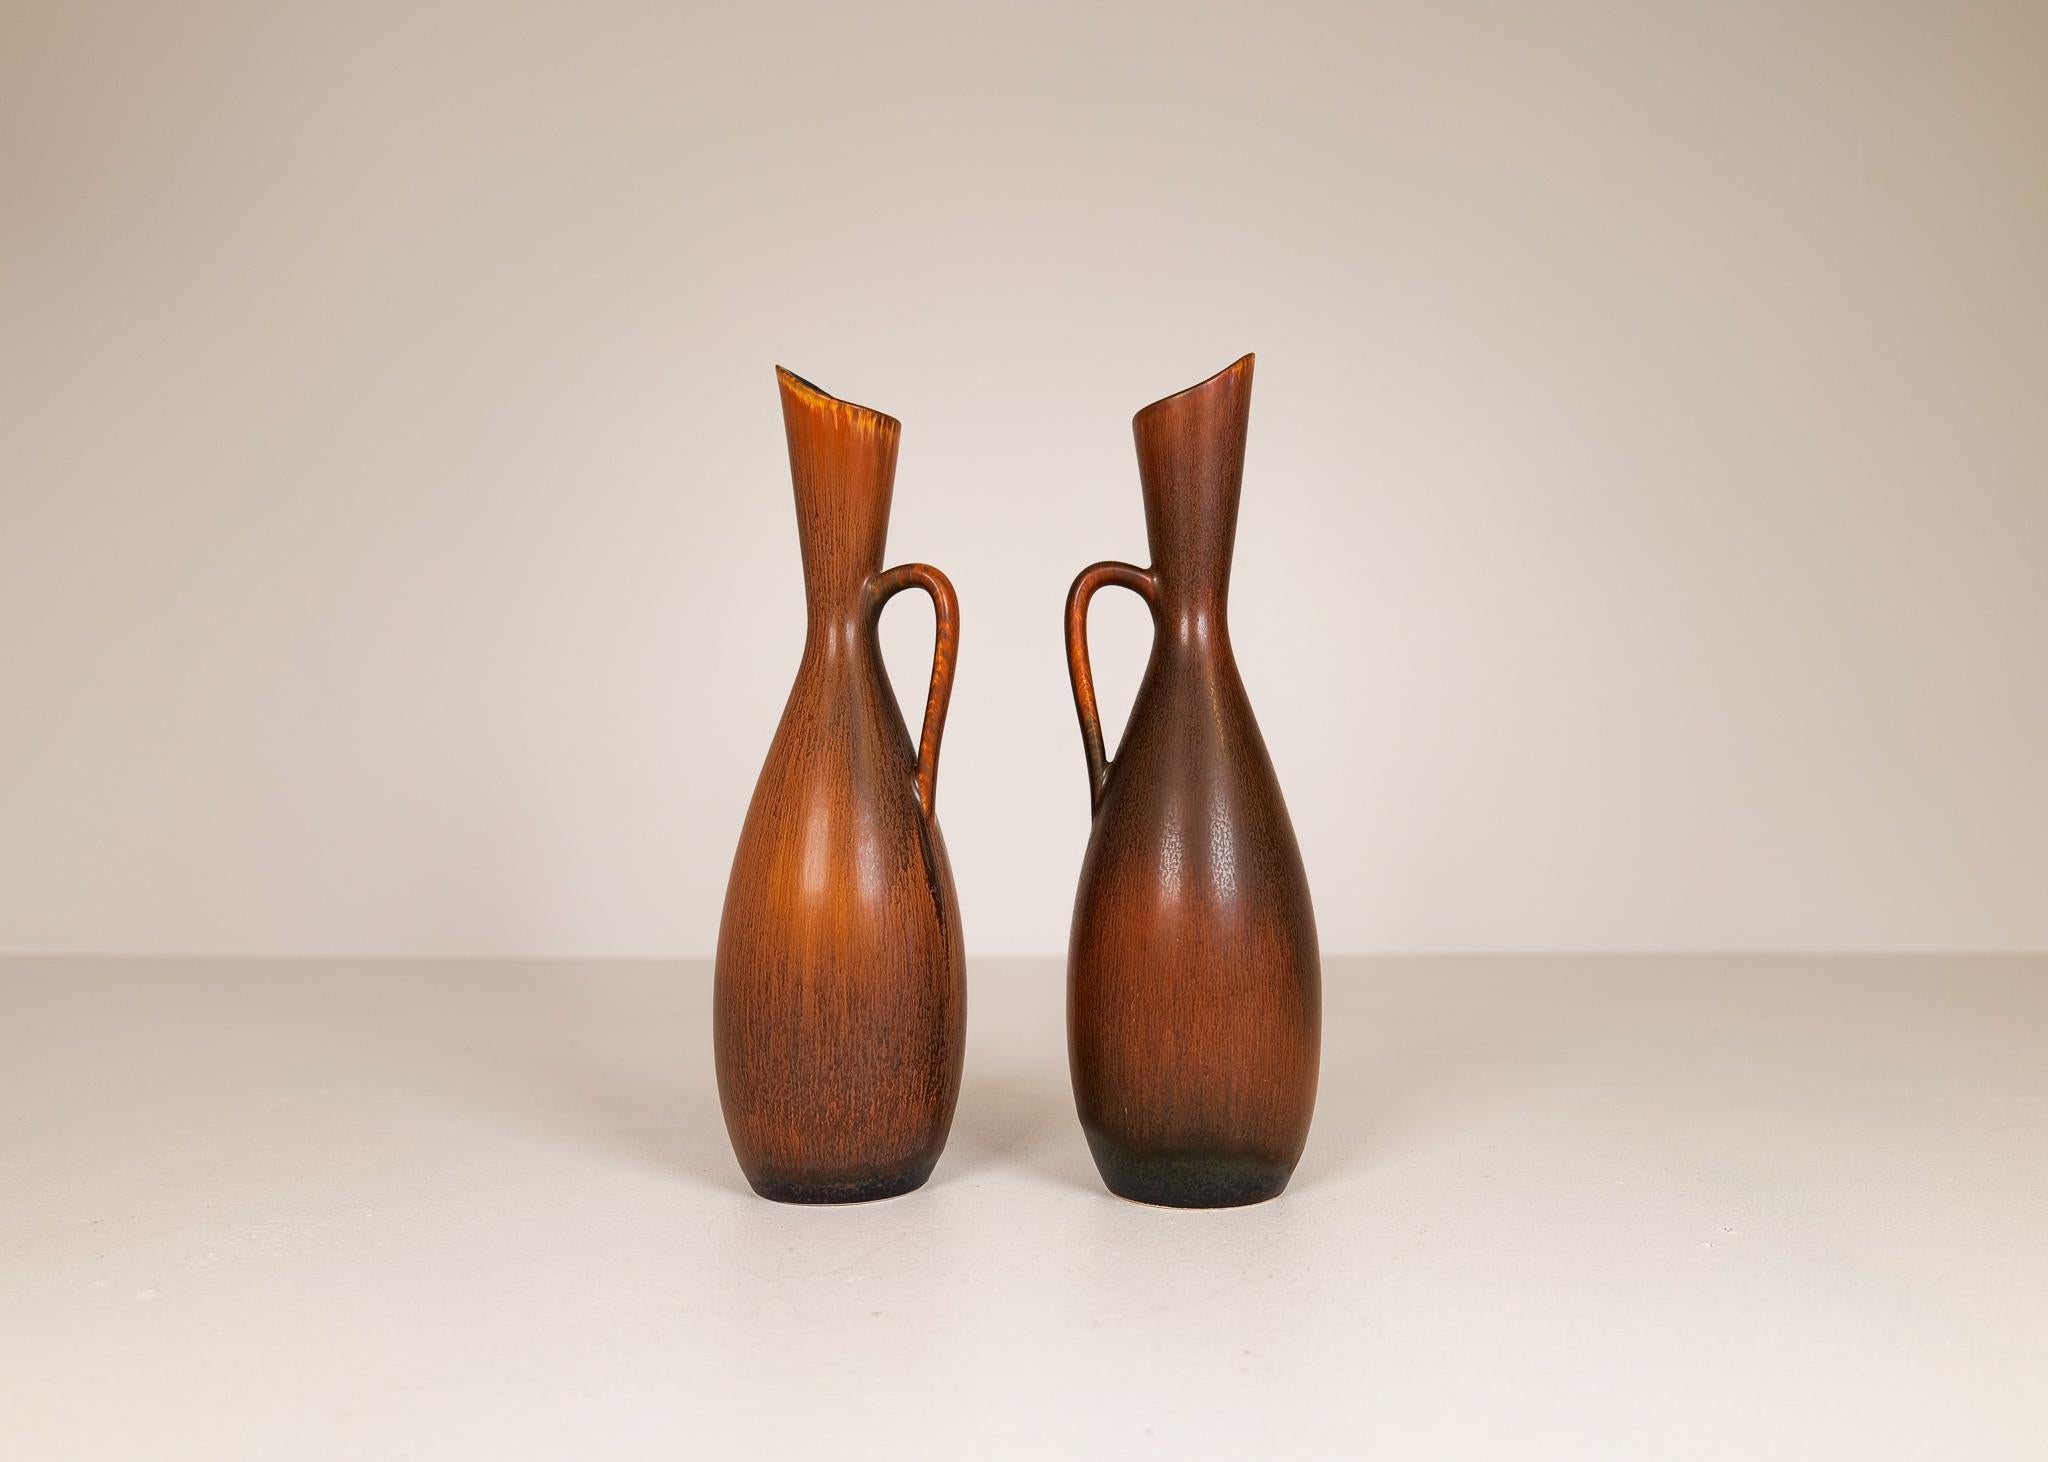 Ceramic Midcentury Modern Vases Rörstrand Carl Harry Stålhane, Sweden, 1950s For Sale